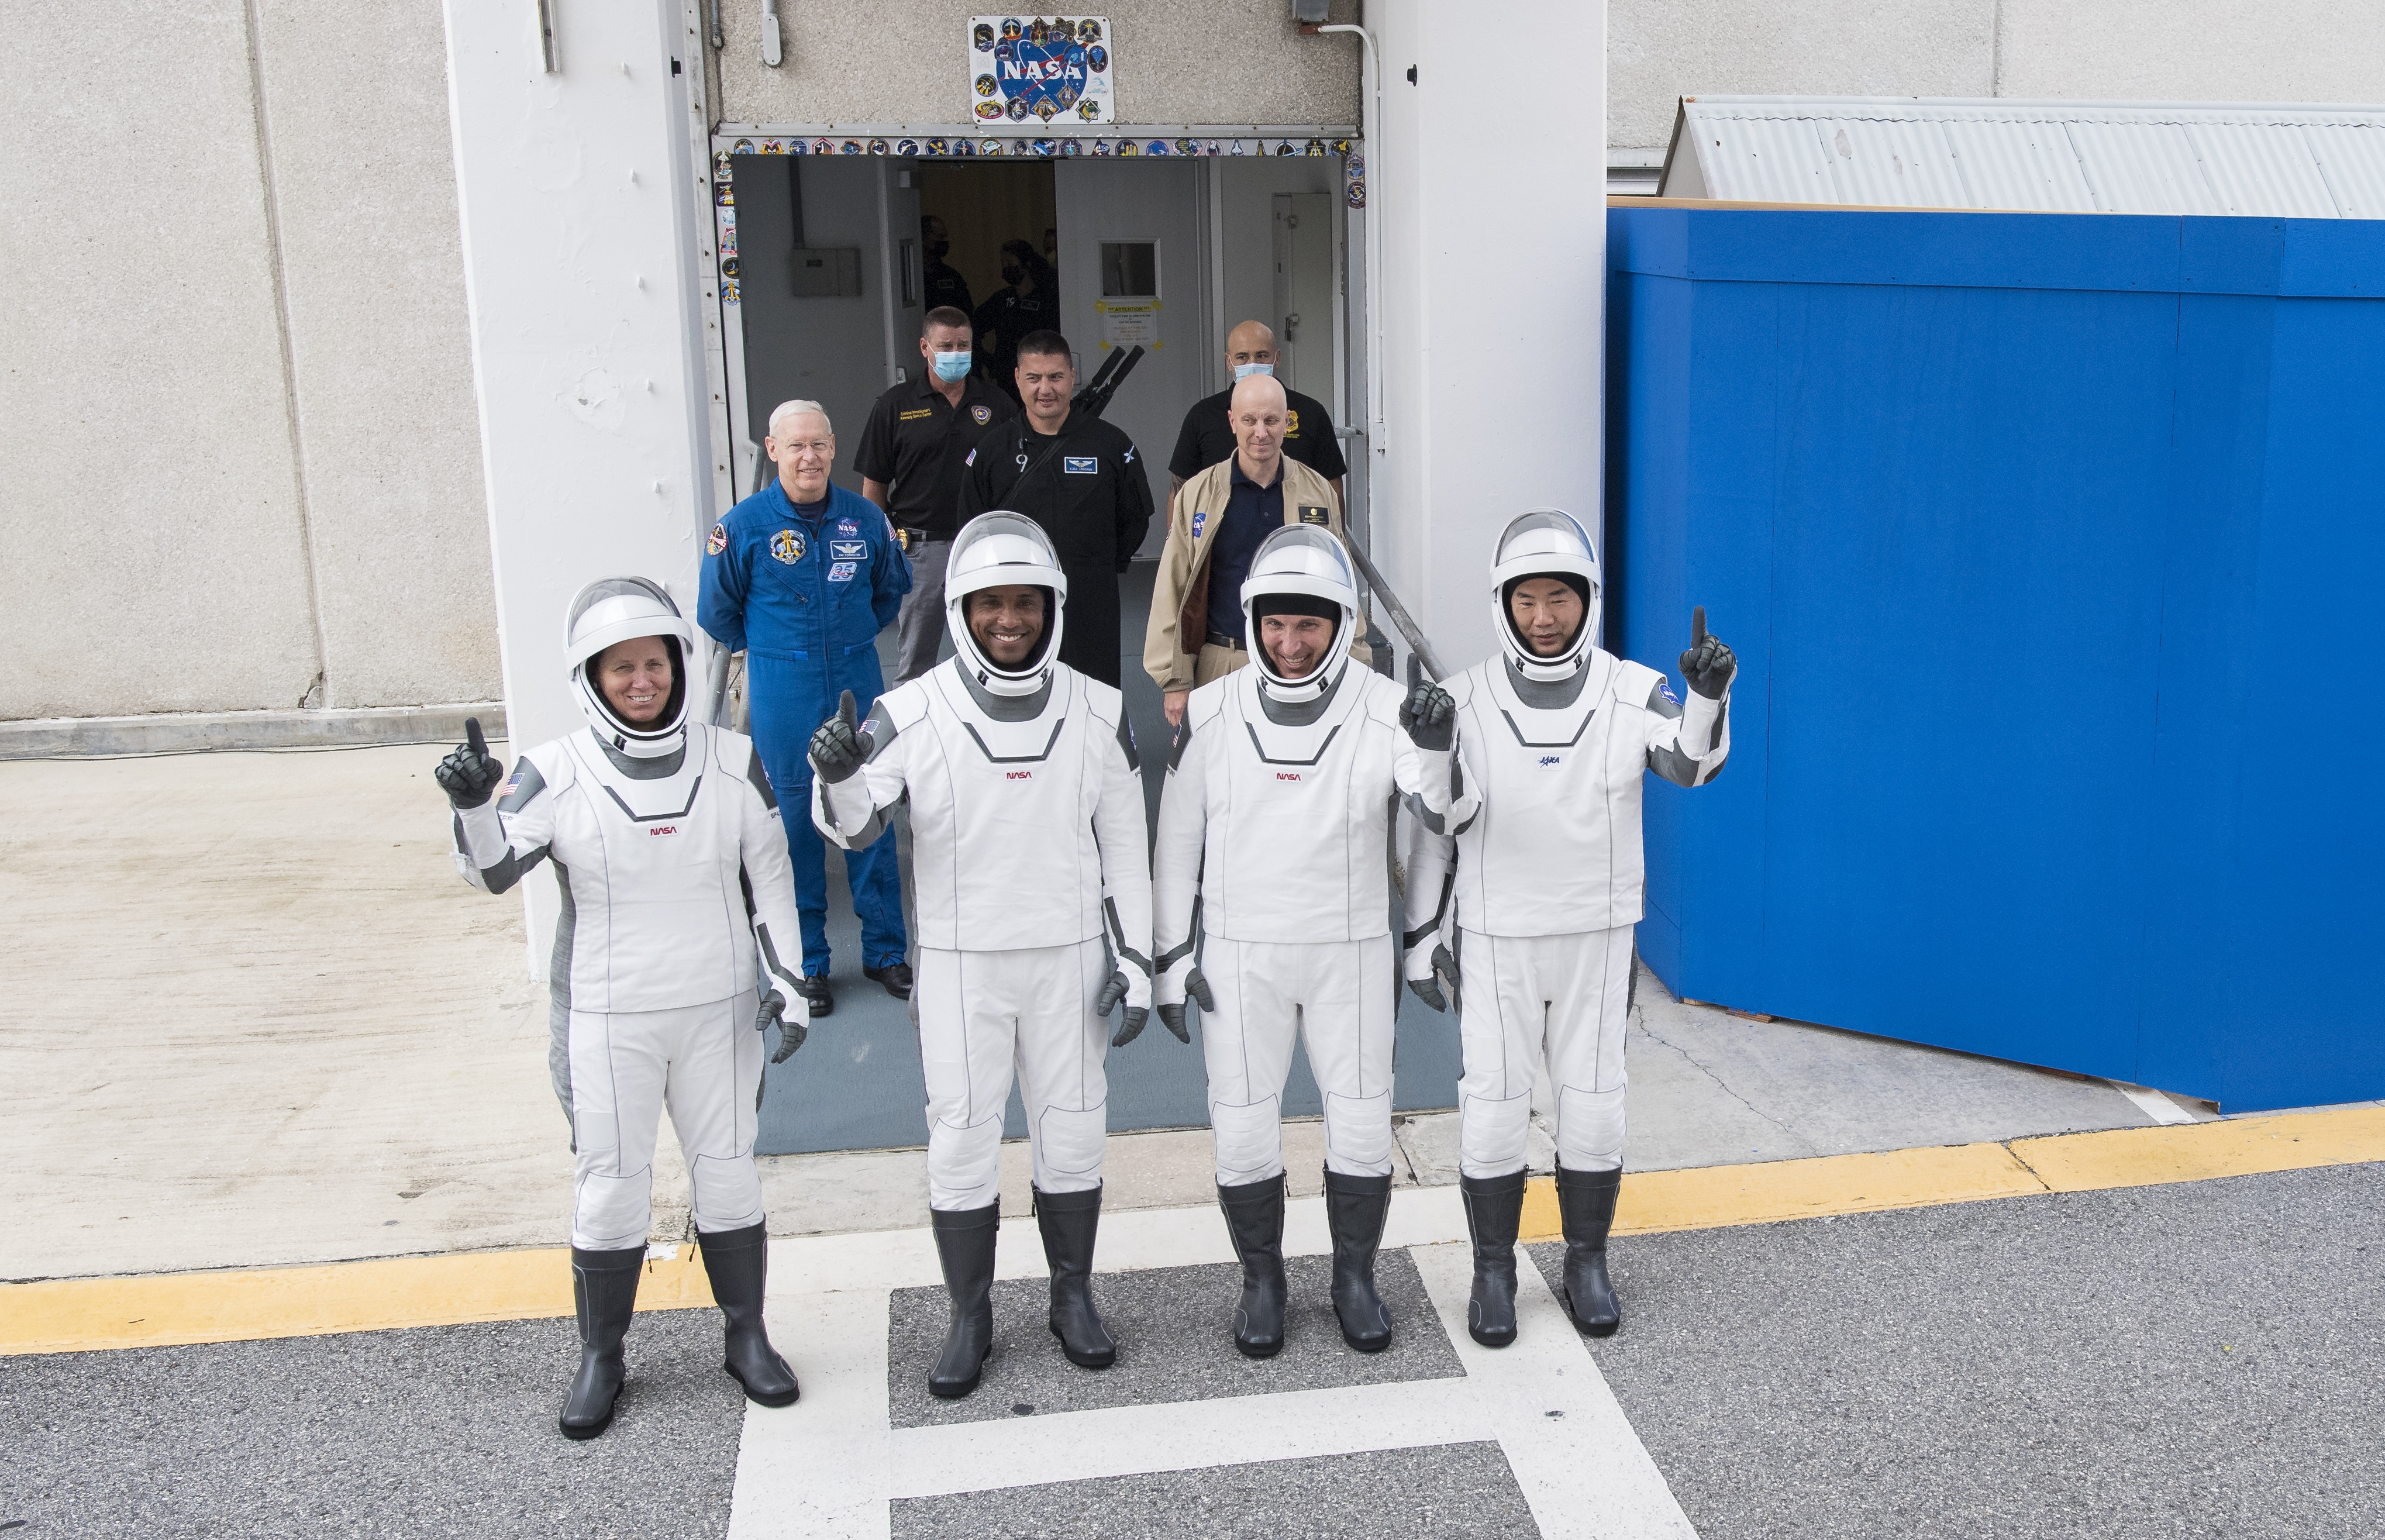 Załoga misji Crew-1 podczas próby generalnej przed startem; od lewej: Shannon Walker, Victor Glover, Michael Hopkins, Soichi Noguchi (Źródło: NASA/Joel Kowsky)